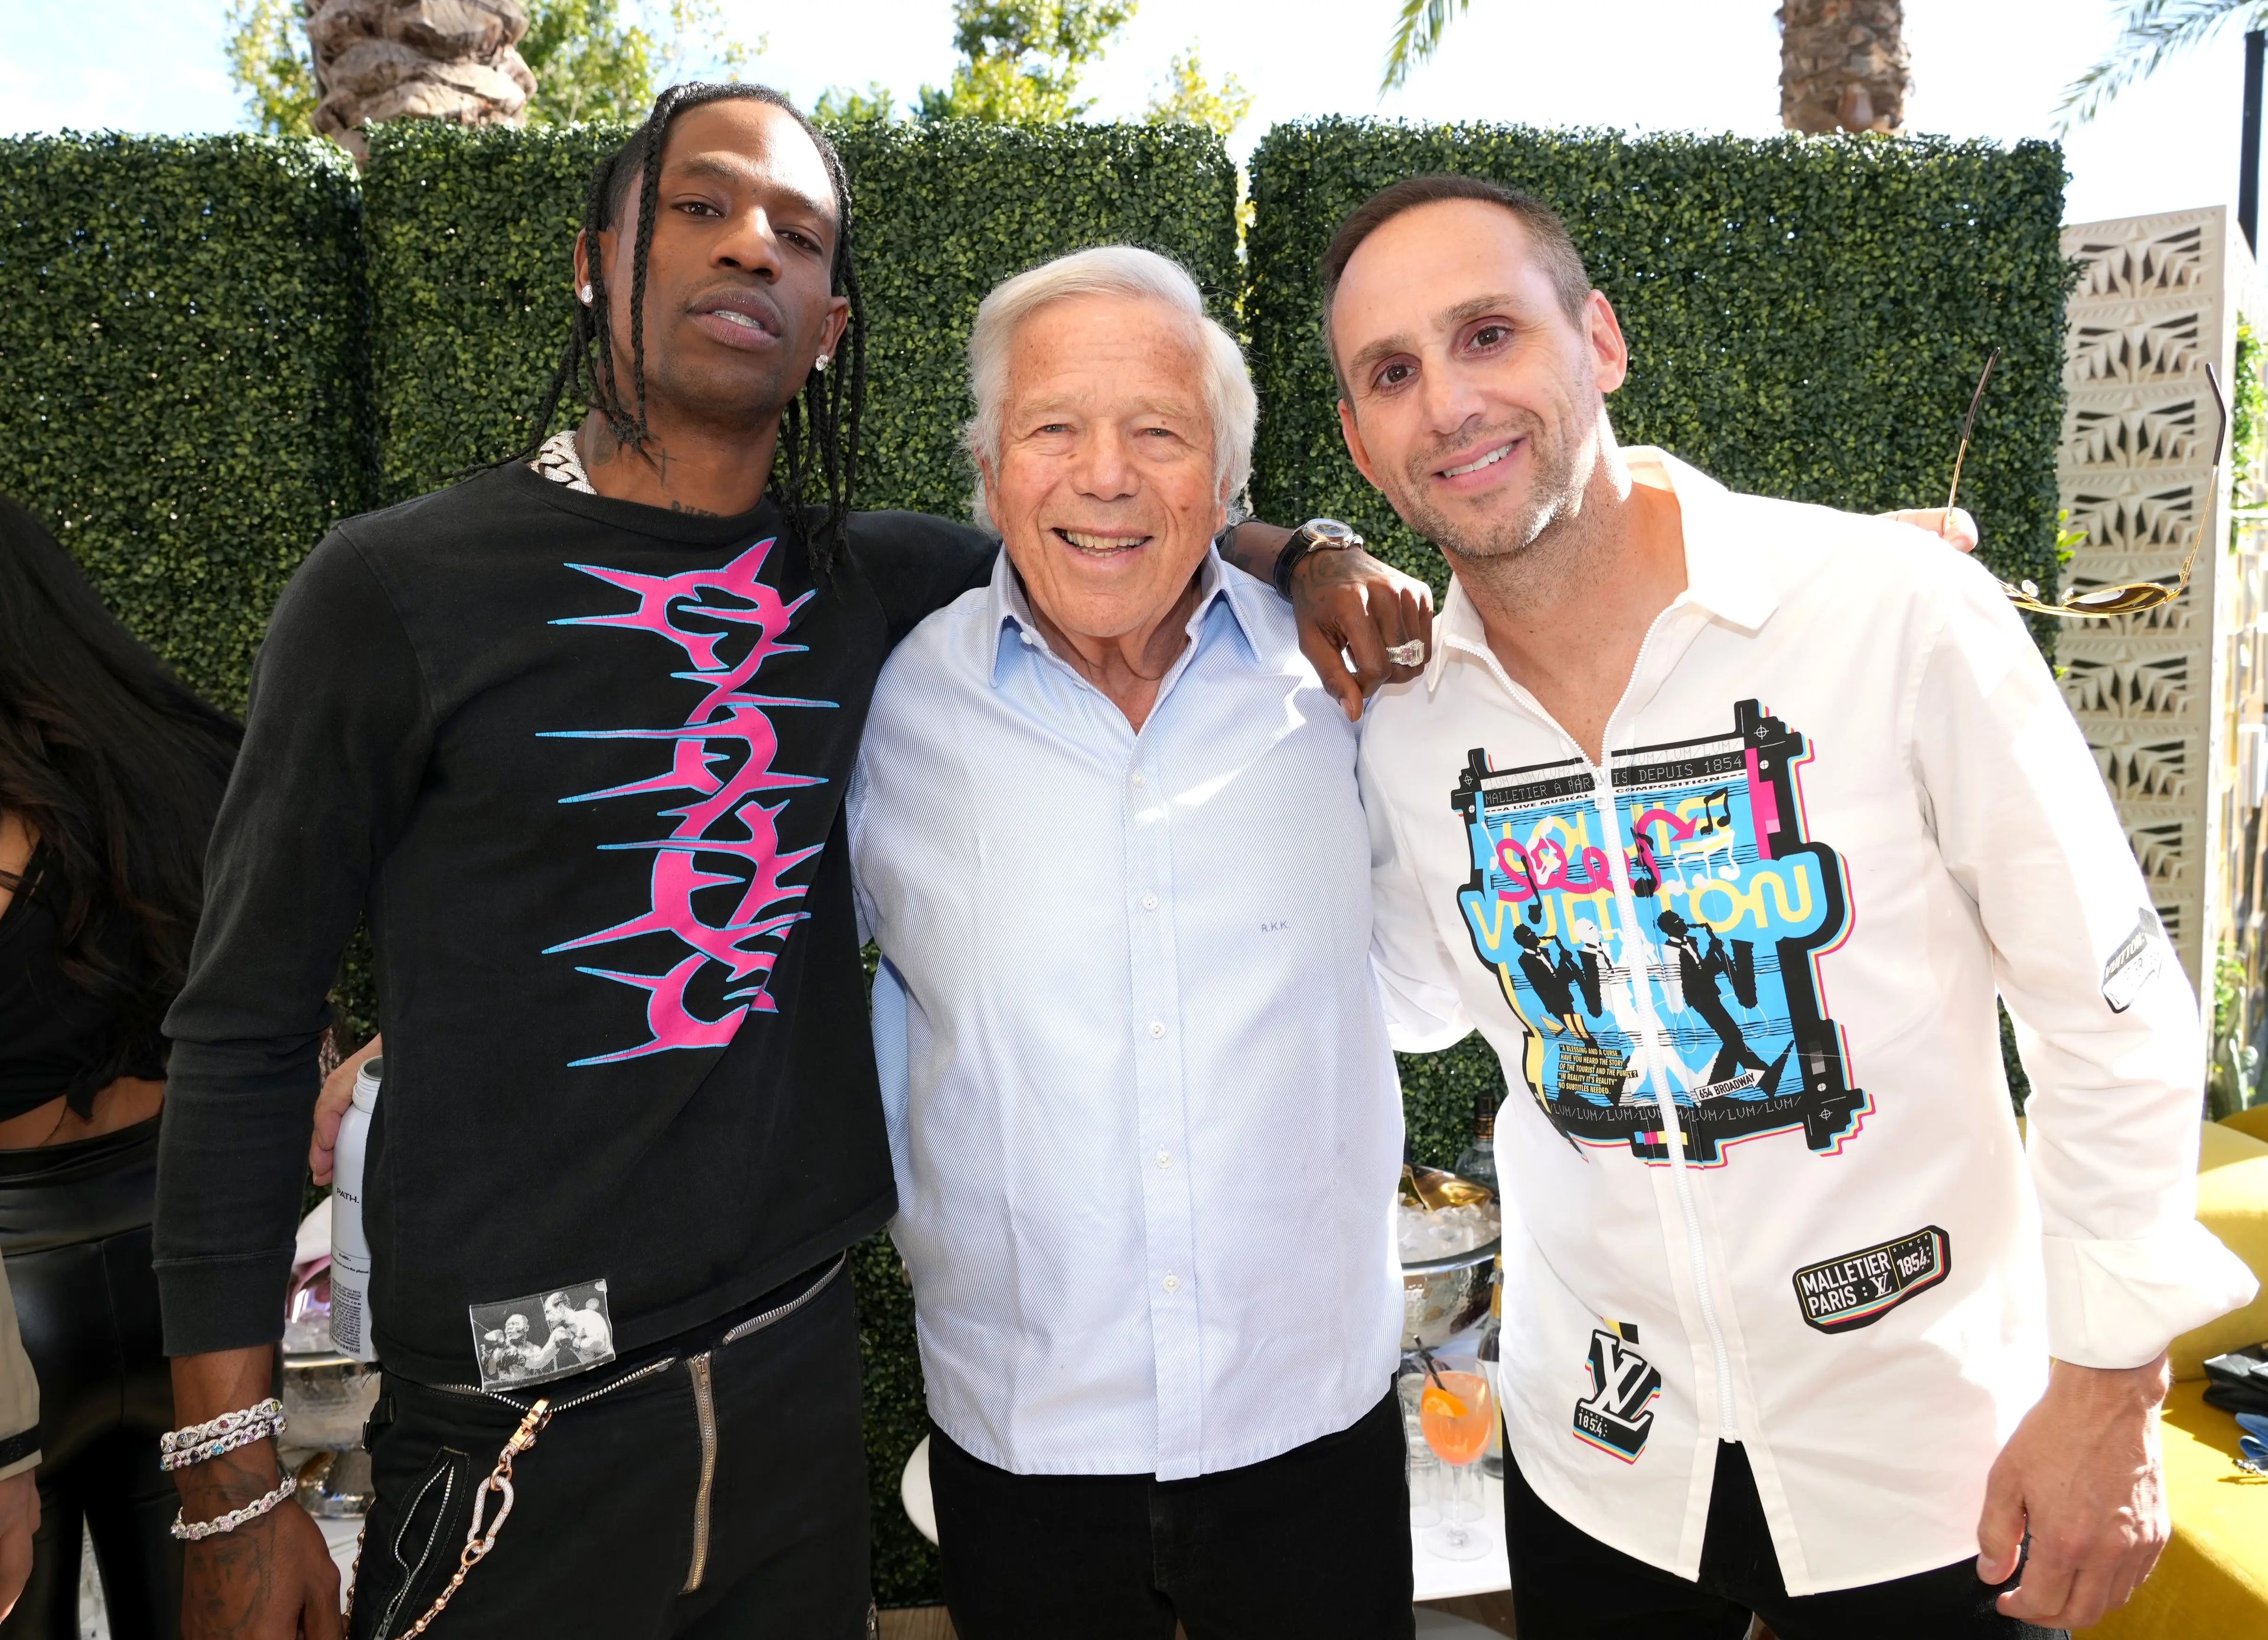 Los multimillonarios Robert Kraft (centro), propietario de los New England Patriots y del grupo Kraft, y Michael Rubin (derecha), CEO de Fanatics, con el rapero Travis Scott (izquierda) en una fiesta del año pasado.